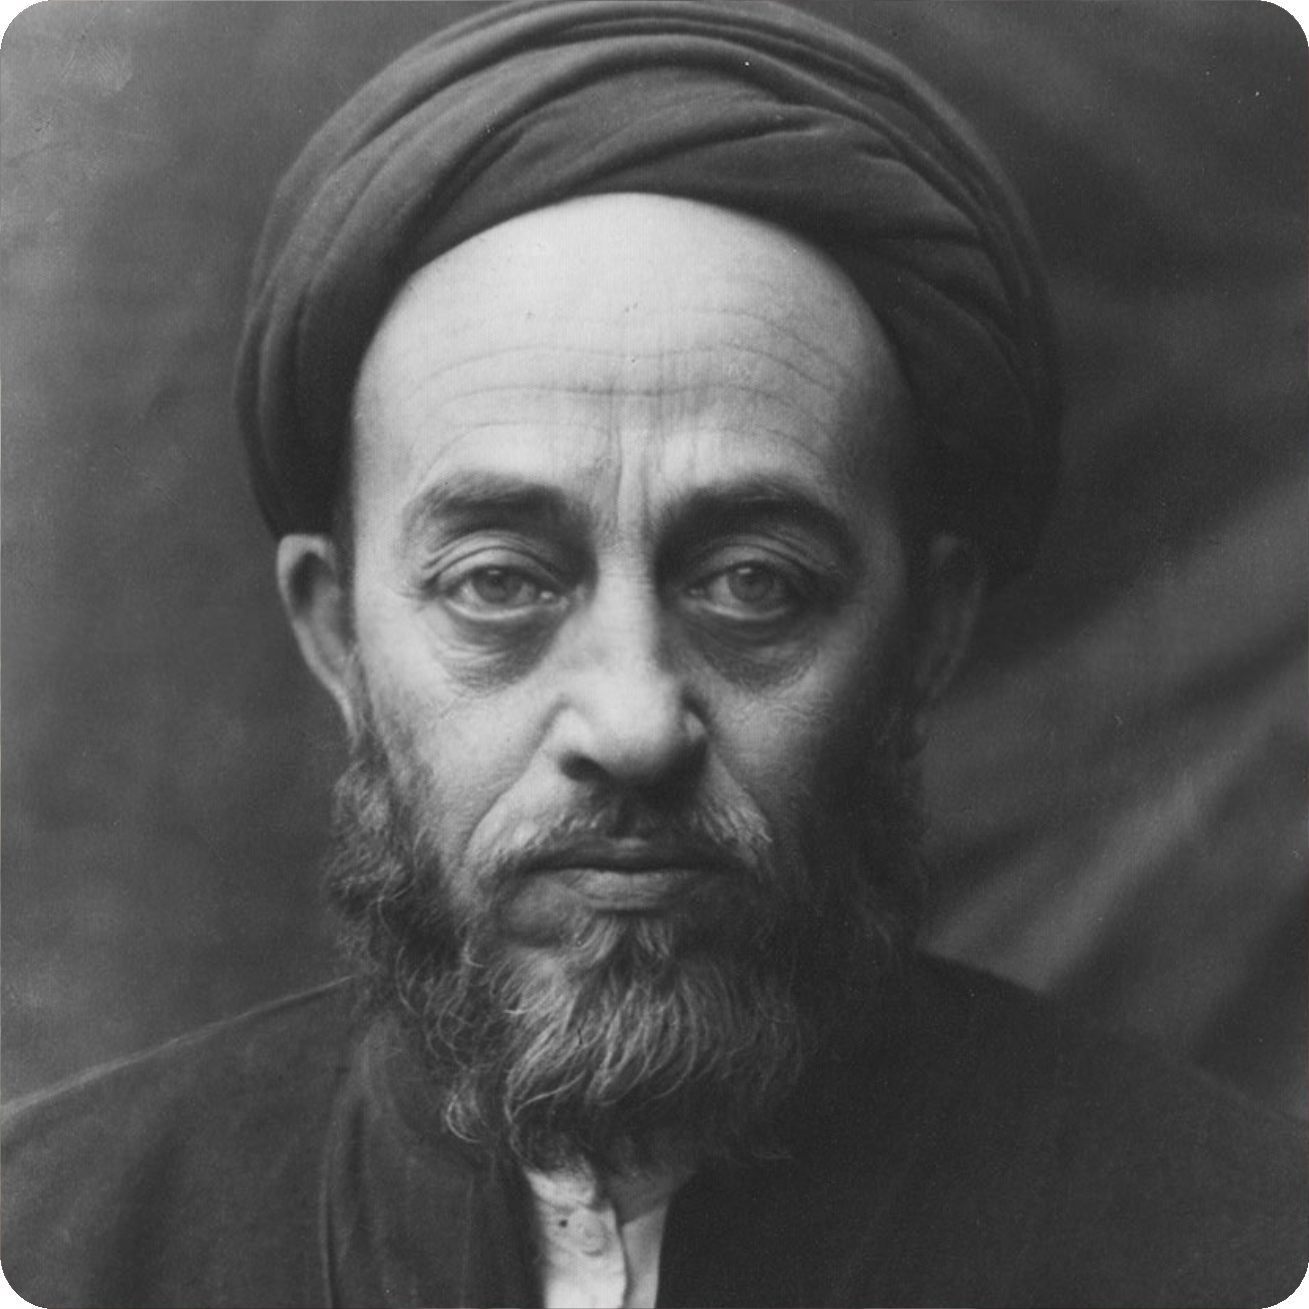 Sayyid Muhammad Husayn Tabatabai